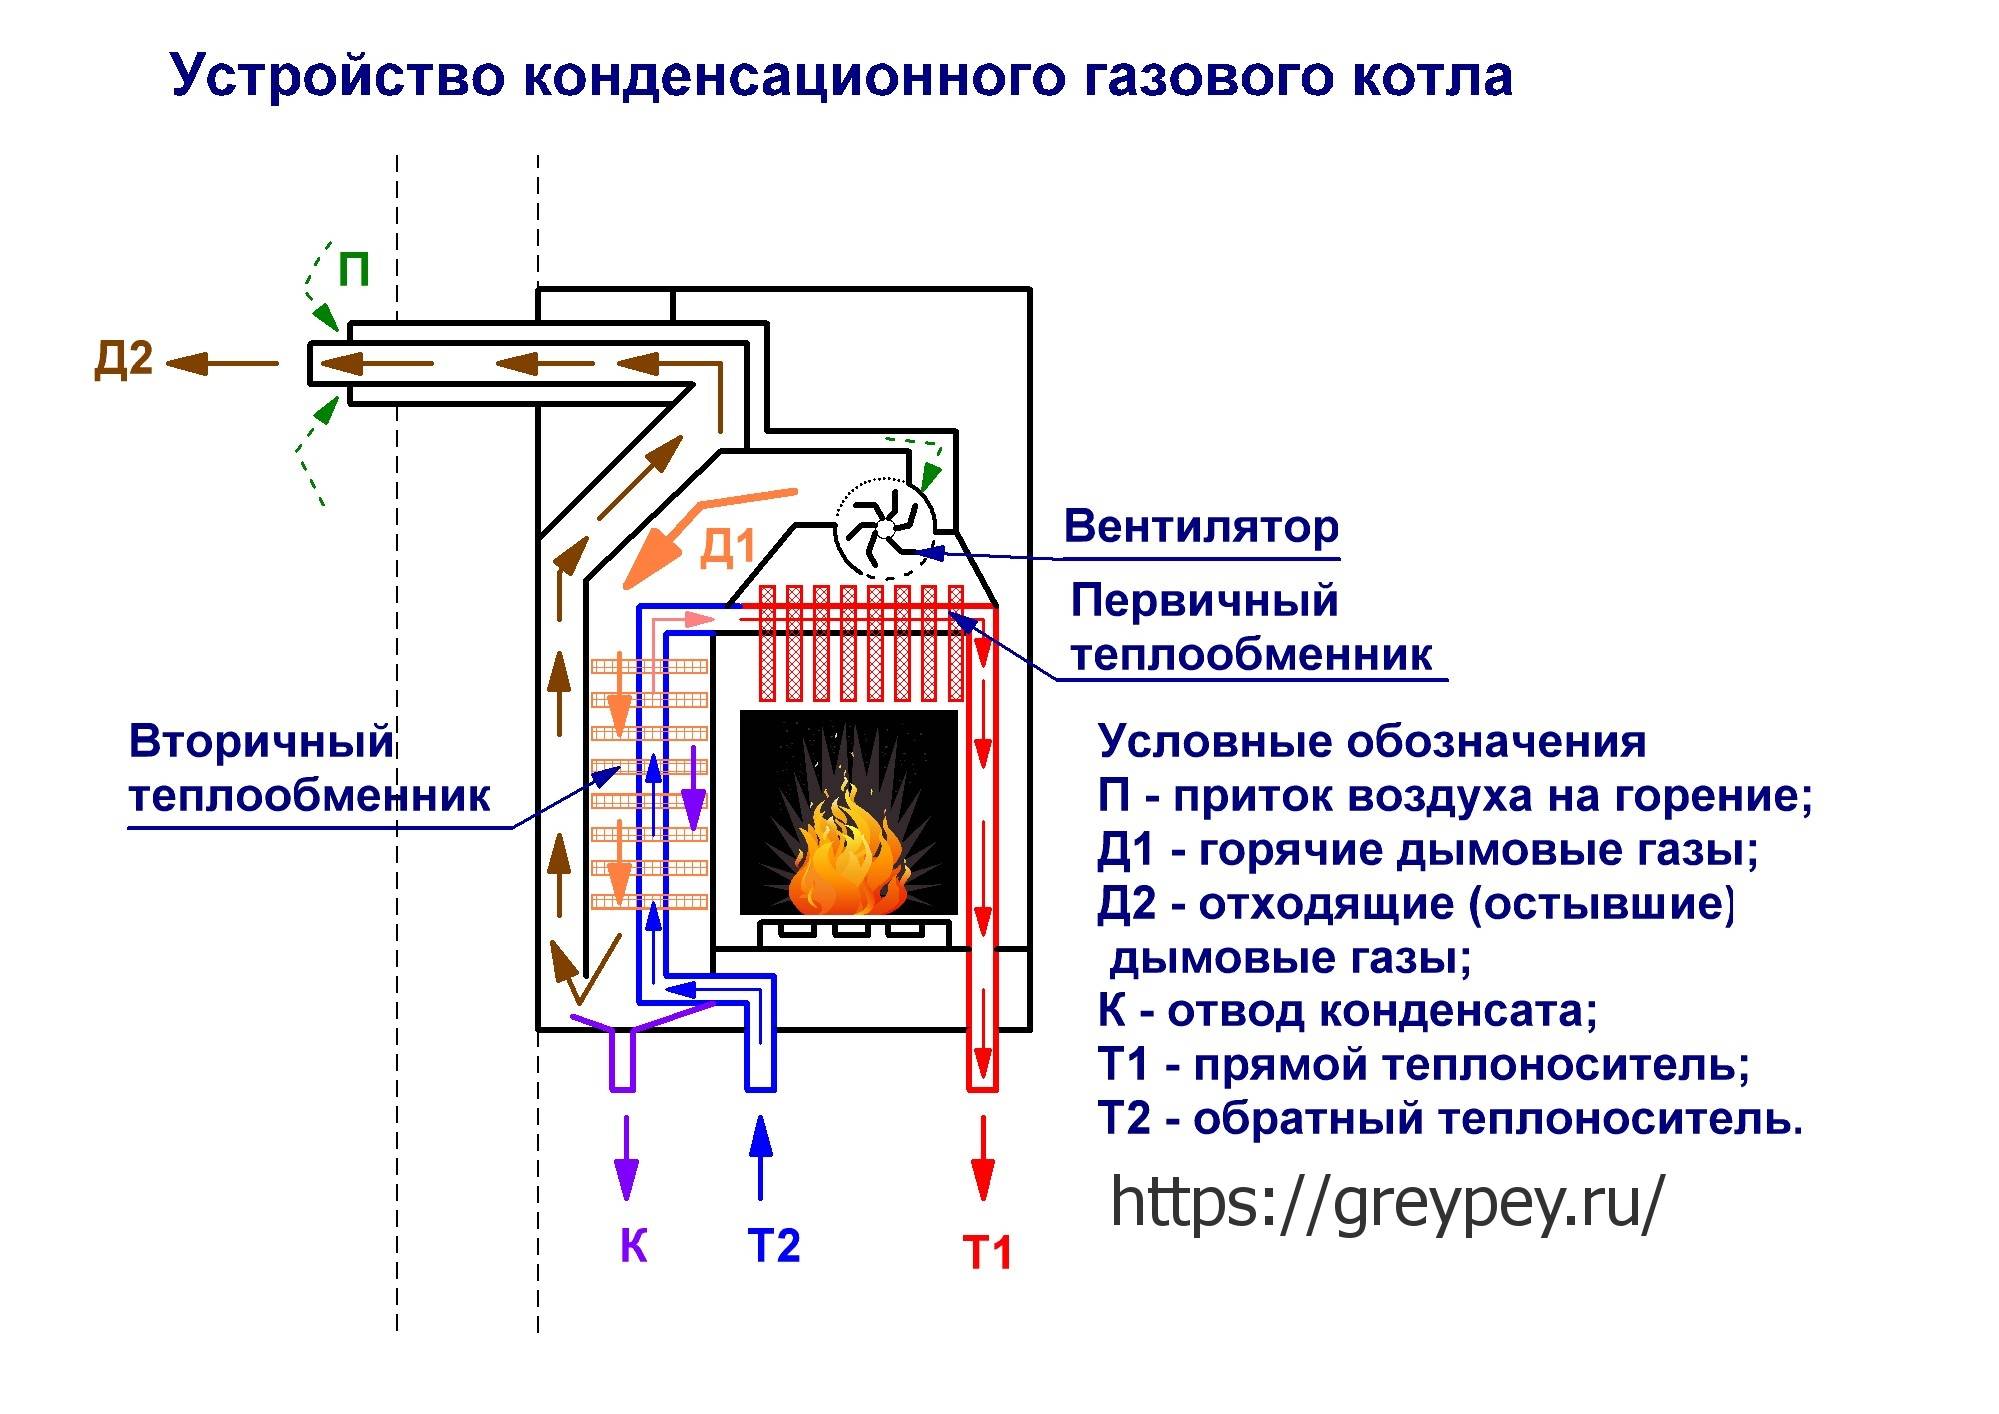 Как устроены турбированные газовые котлы для отопления